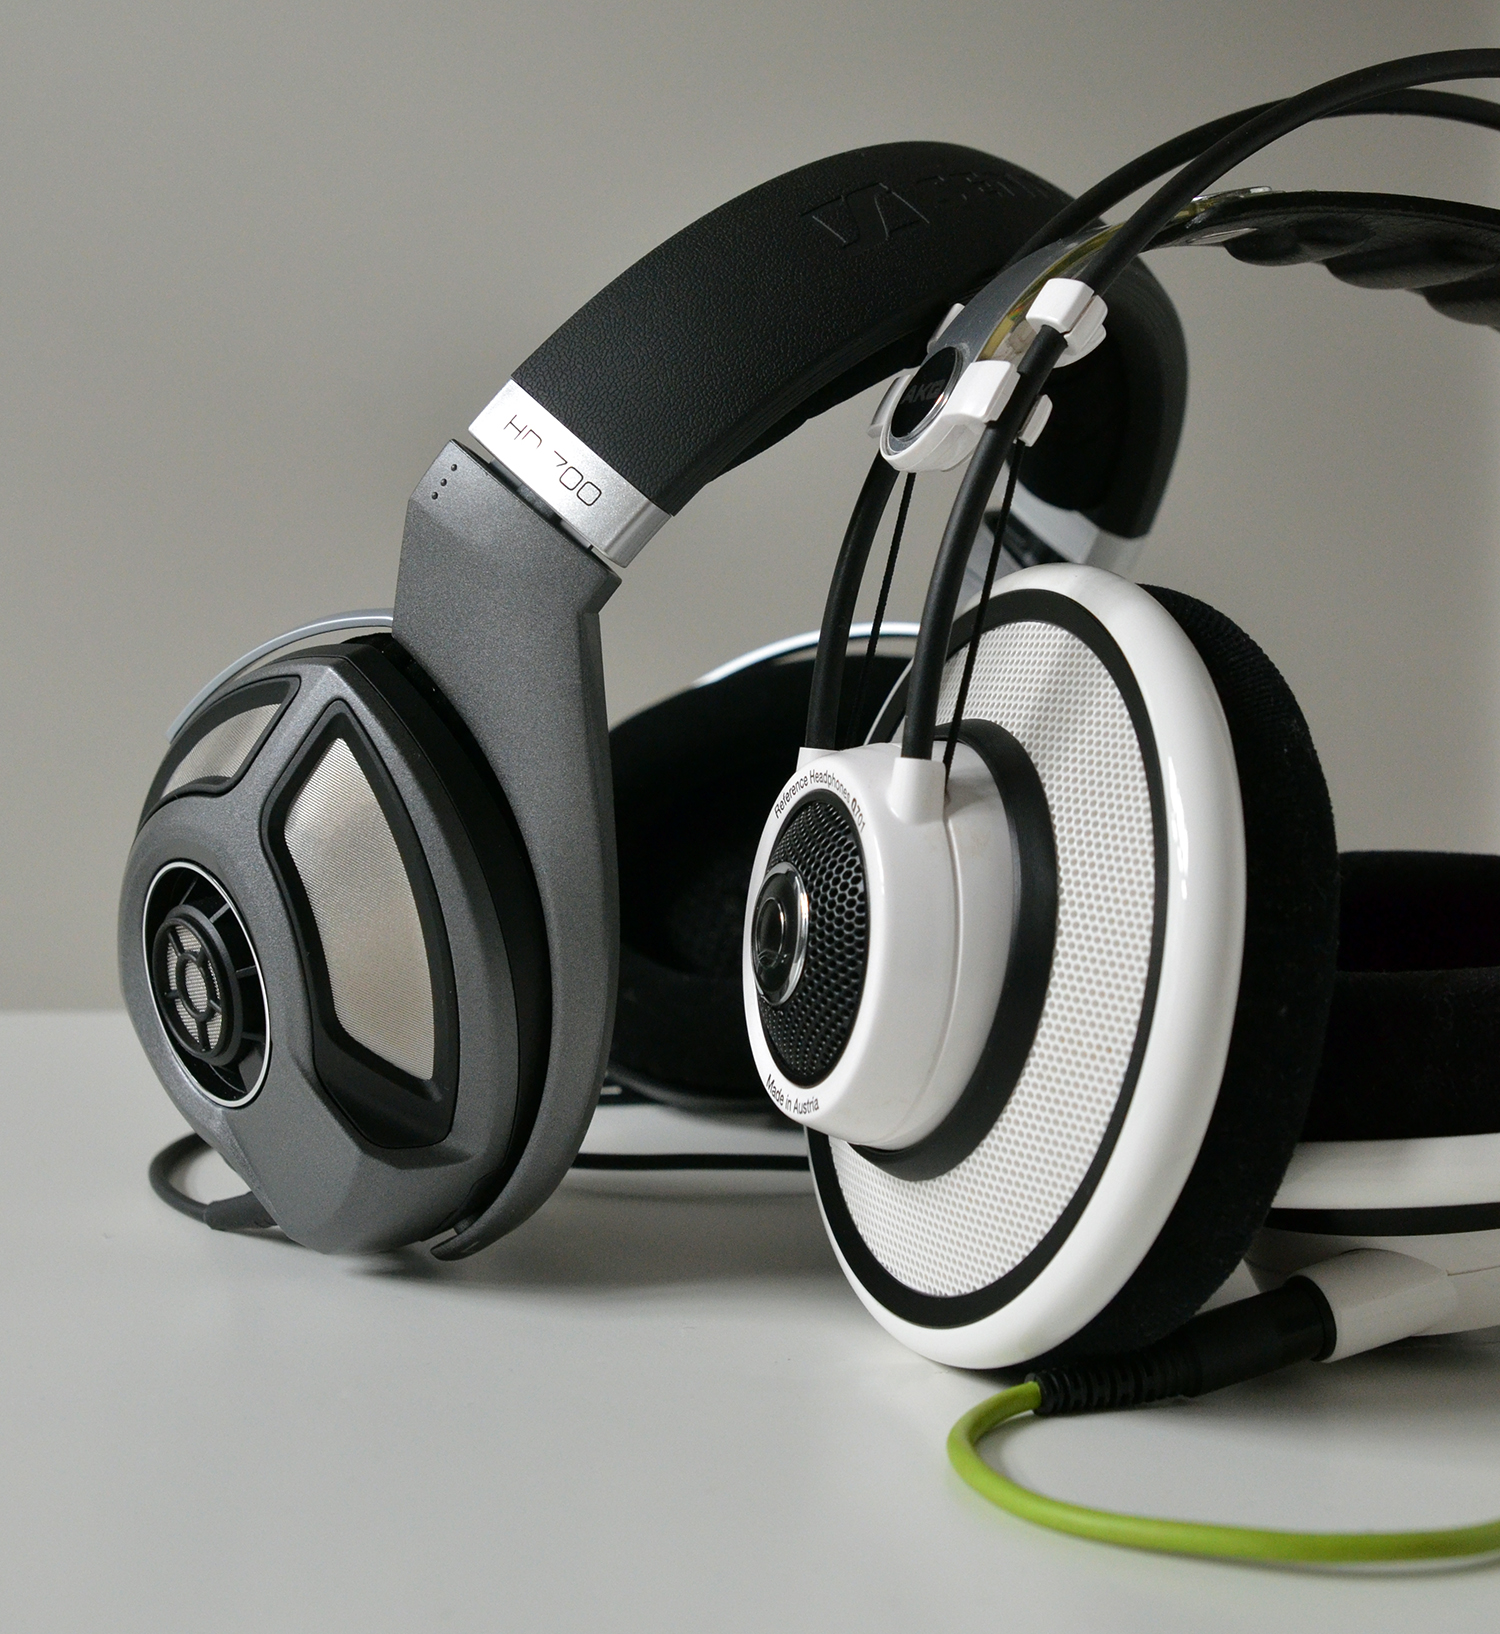 オーディオ機器 ヘッドフォン THE BIG AKG K701 AND Q701 REVIEW | The Headphoneer